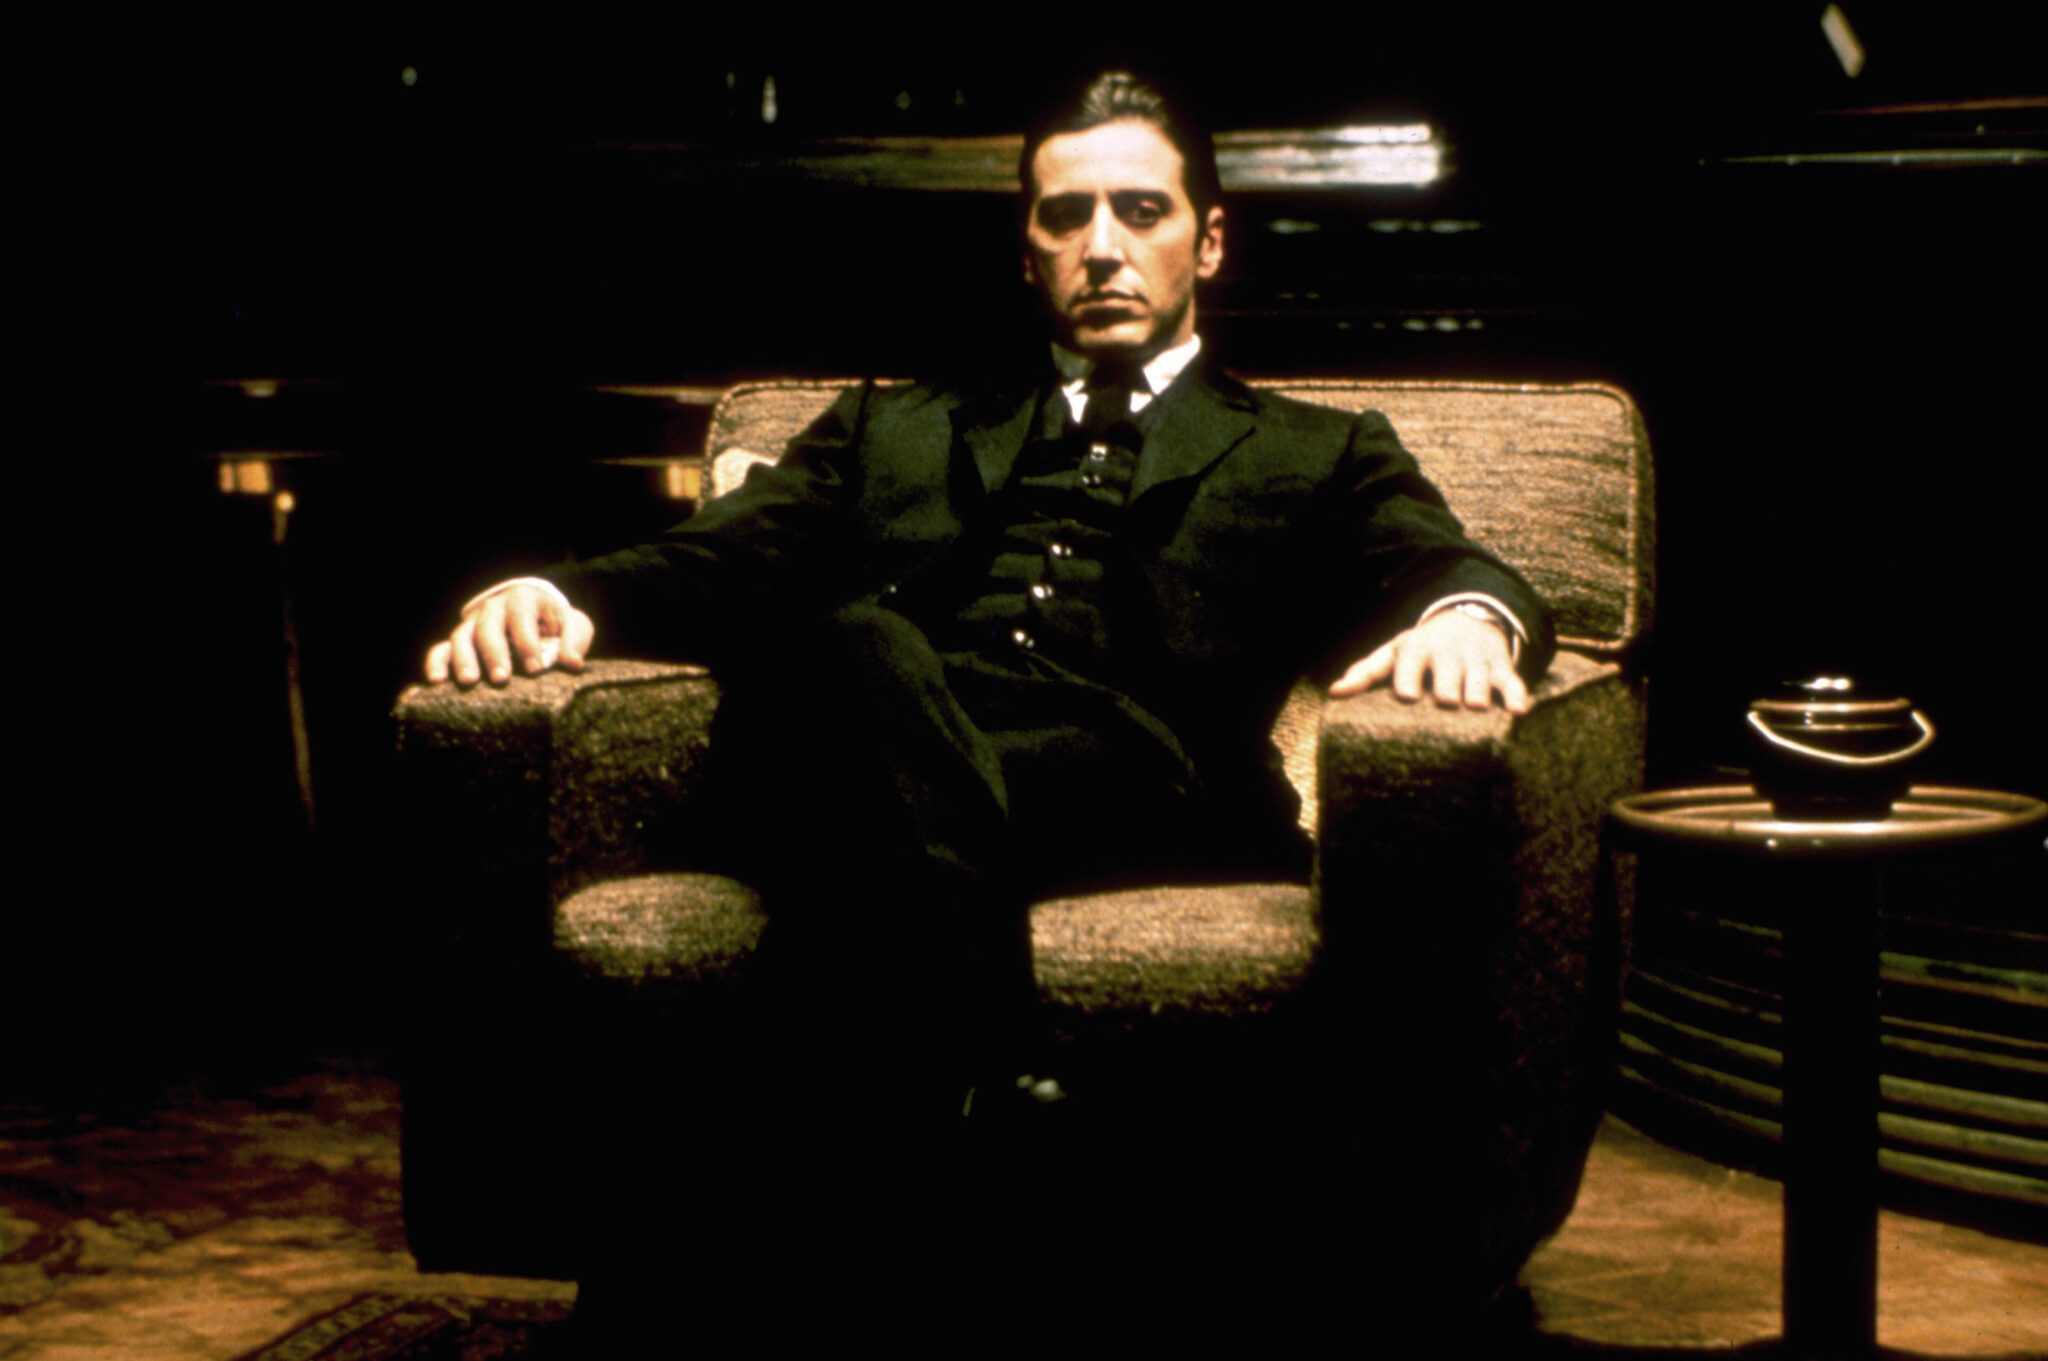 Auf dem Bild erkennt man Michael Corleone im Anzug, wie er selbstbewusst auf einem Sessel sitzt - Der Pate-Trilogie